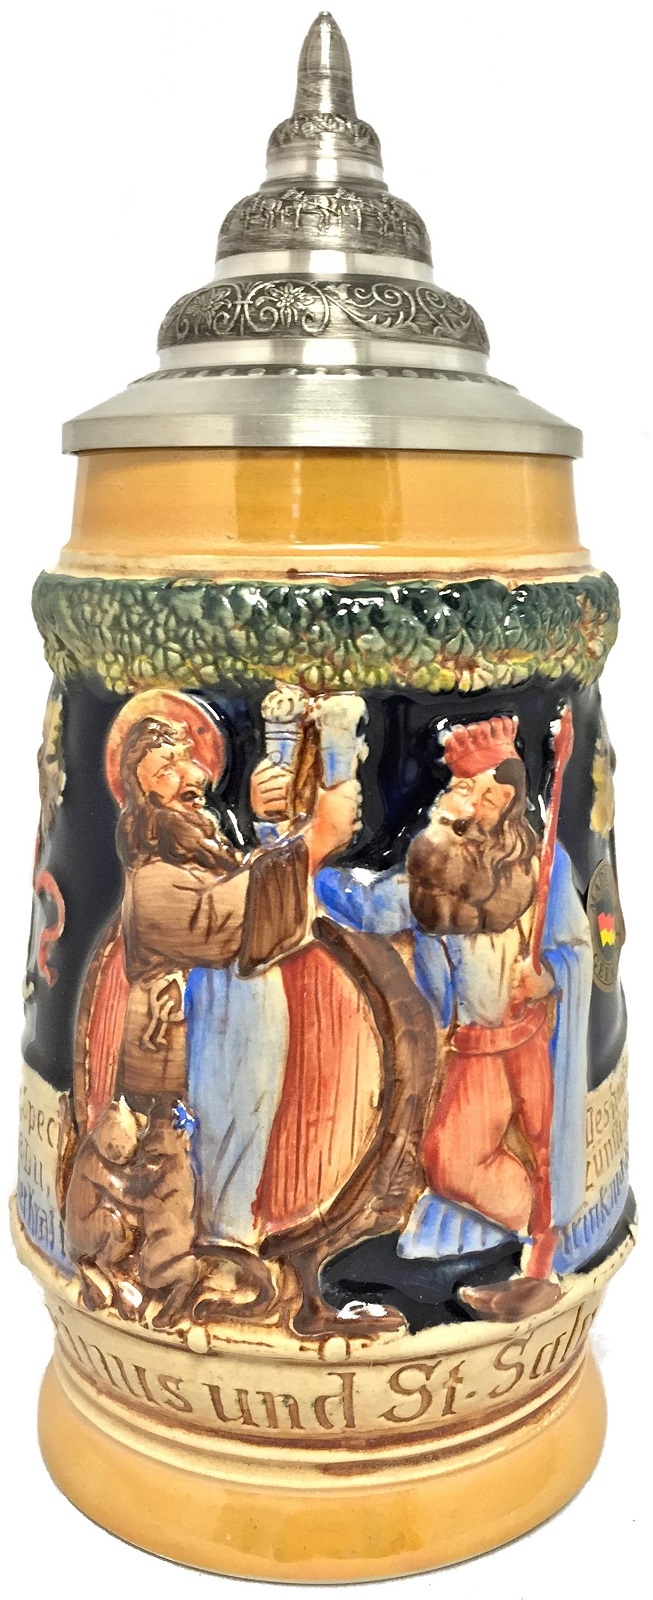 Gambrinus King of Beers and Saint Salvator Toasting German Beer Stein .5 L